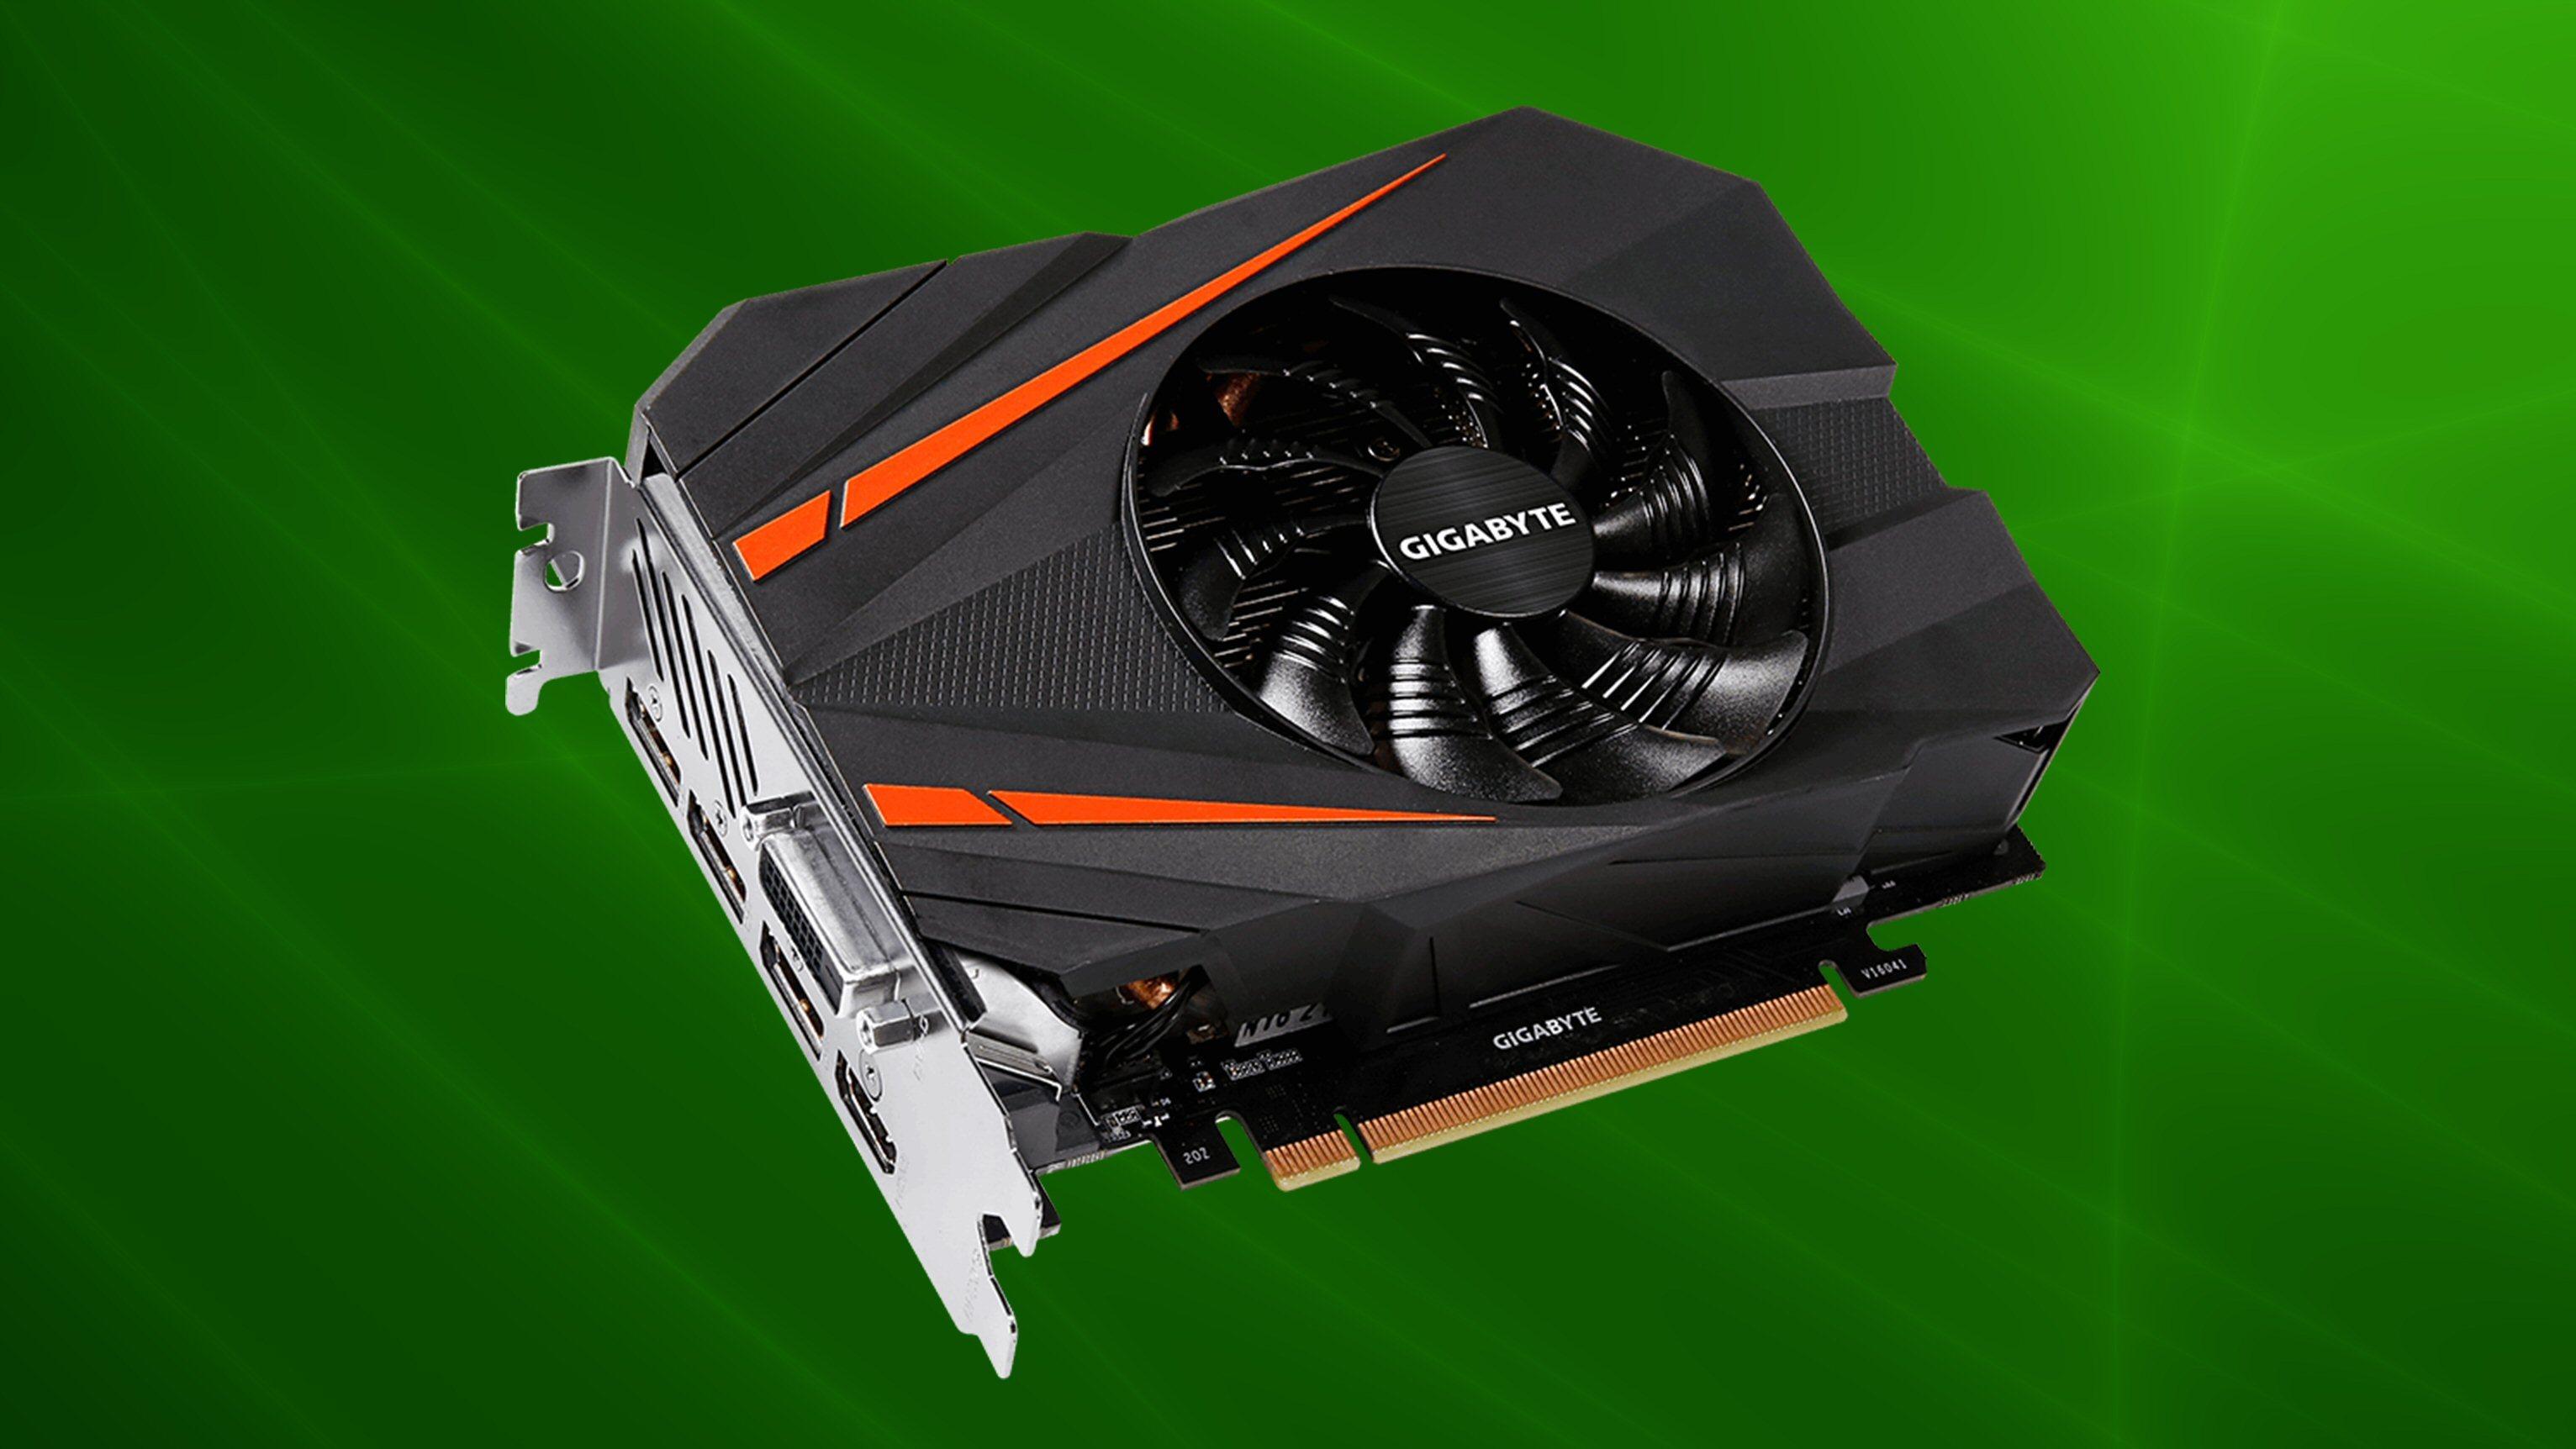 Verdens minste GeForce GTX 1080 er lansert